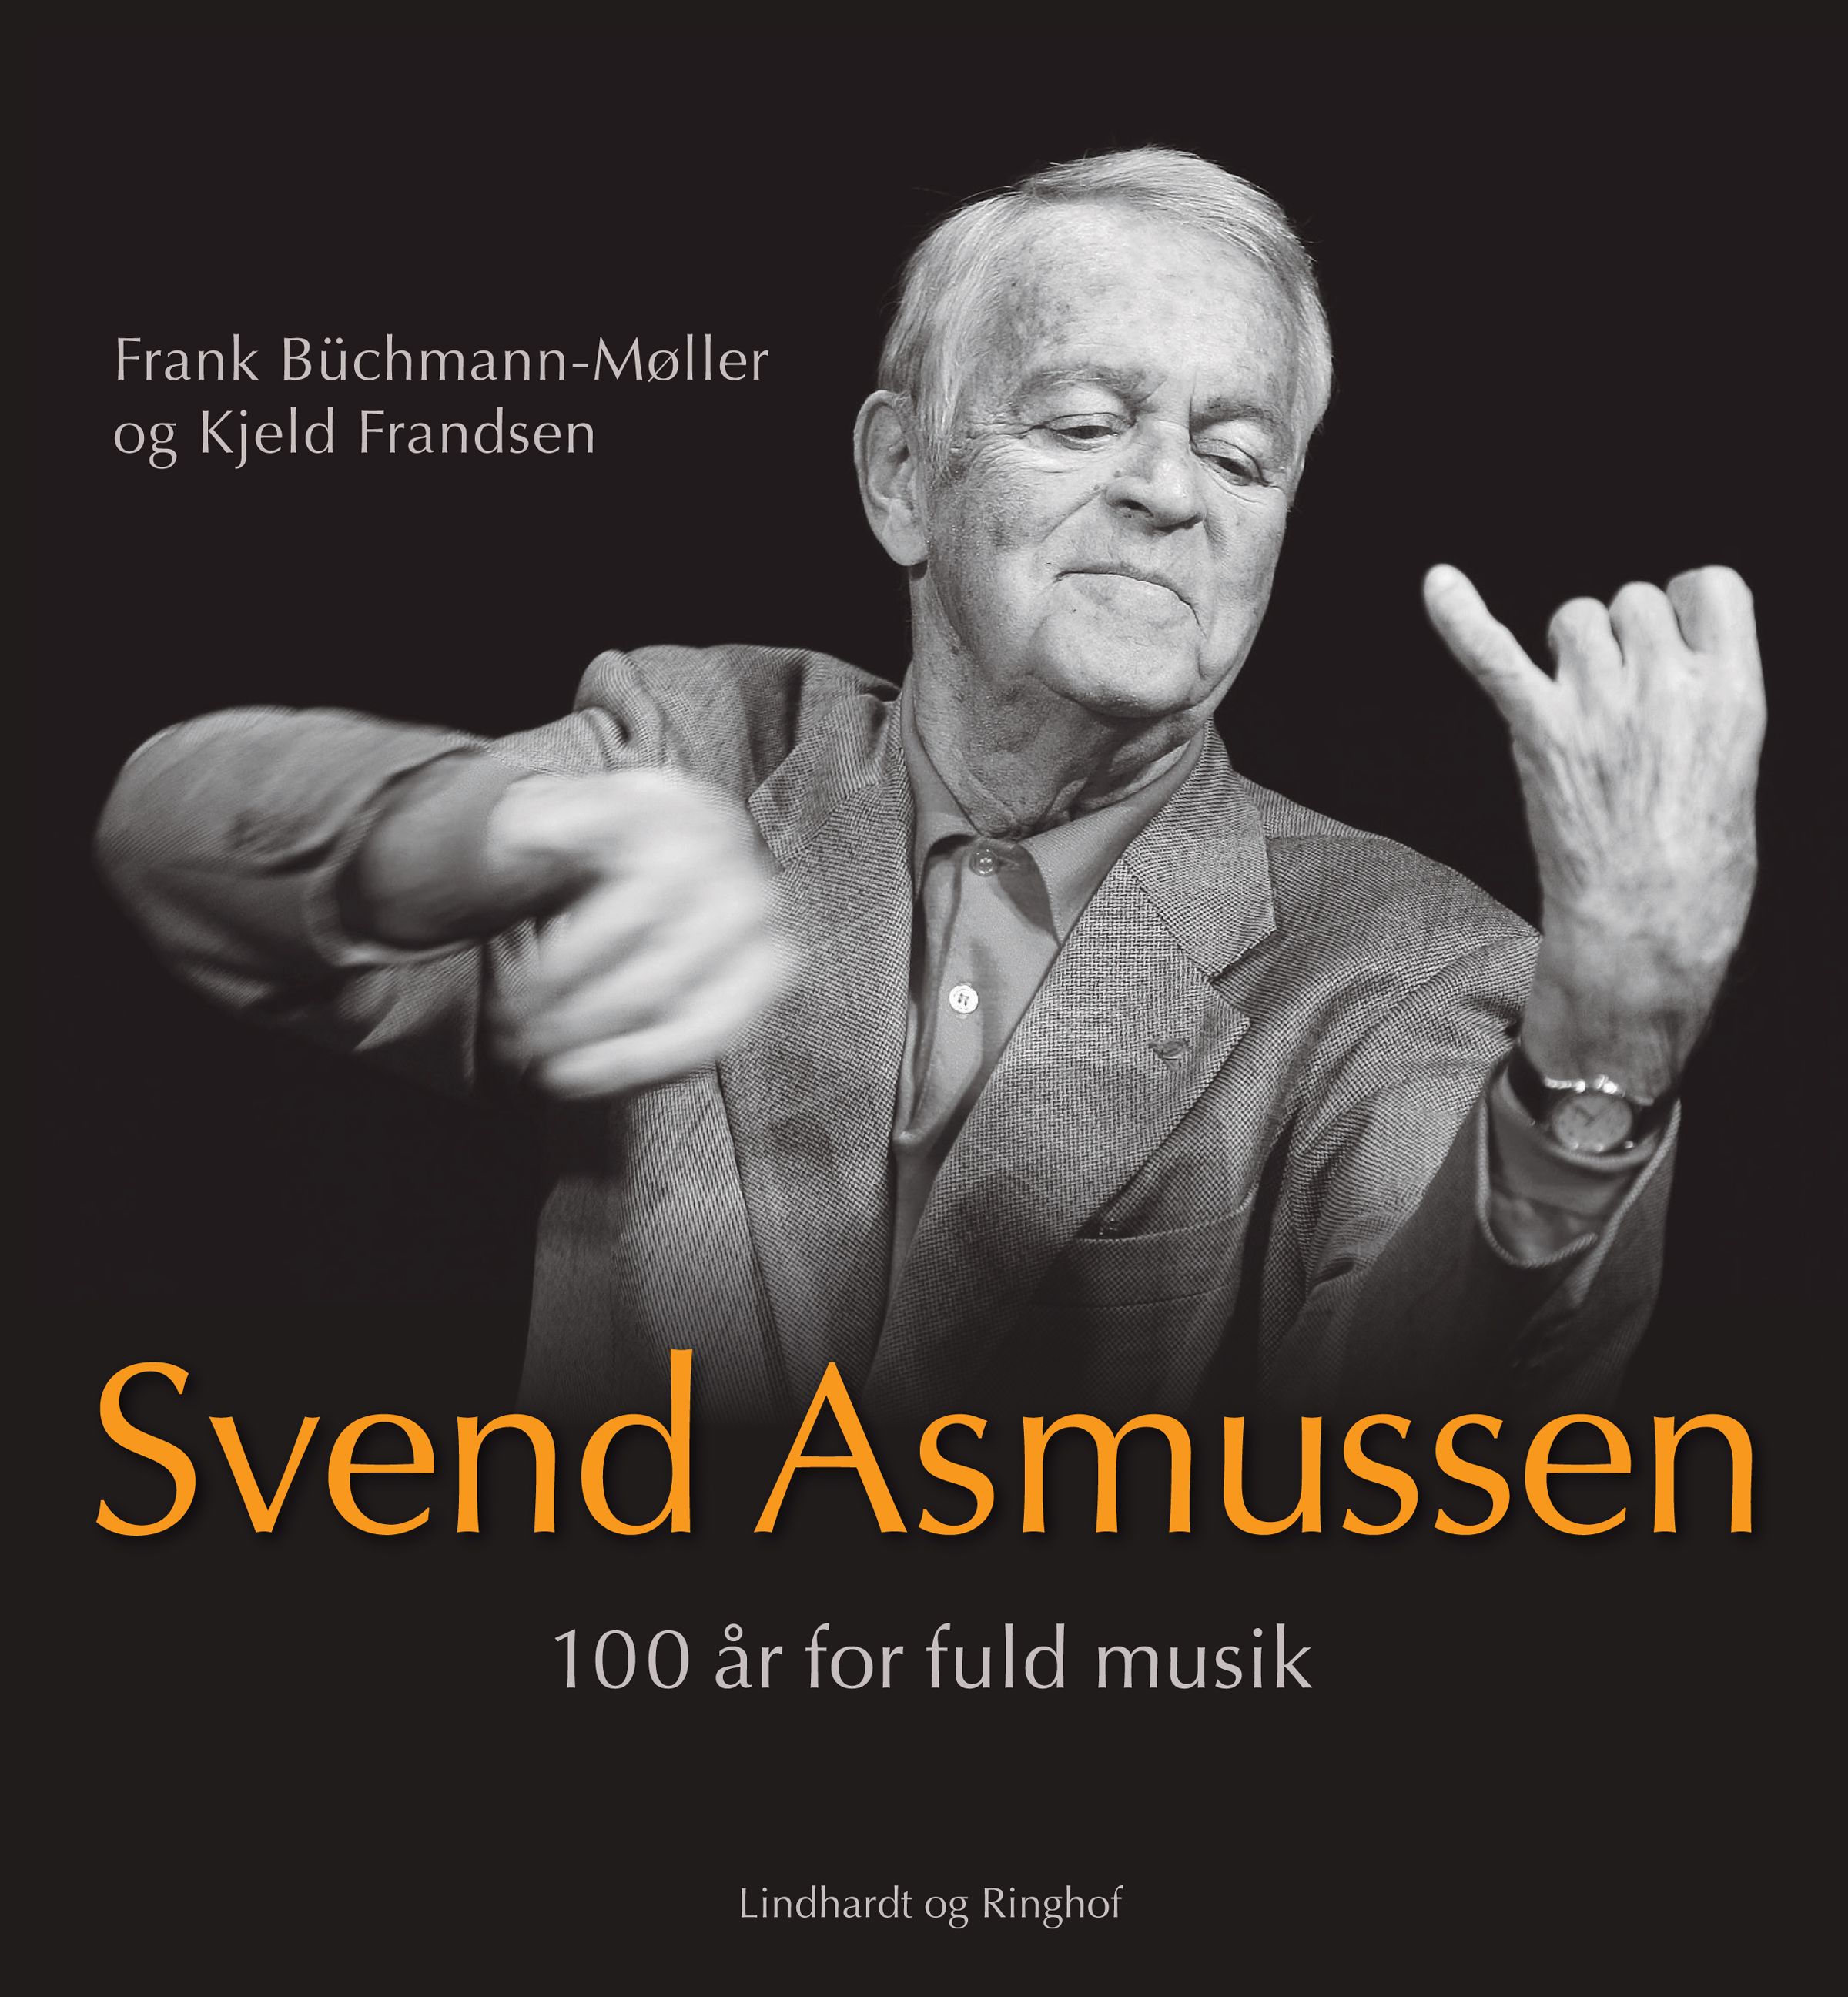 Svend Asmussen. 100 år for fuld musik, e-bog af Frank Büchmann-Møller, Kjeld Frandsen